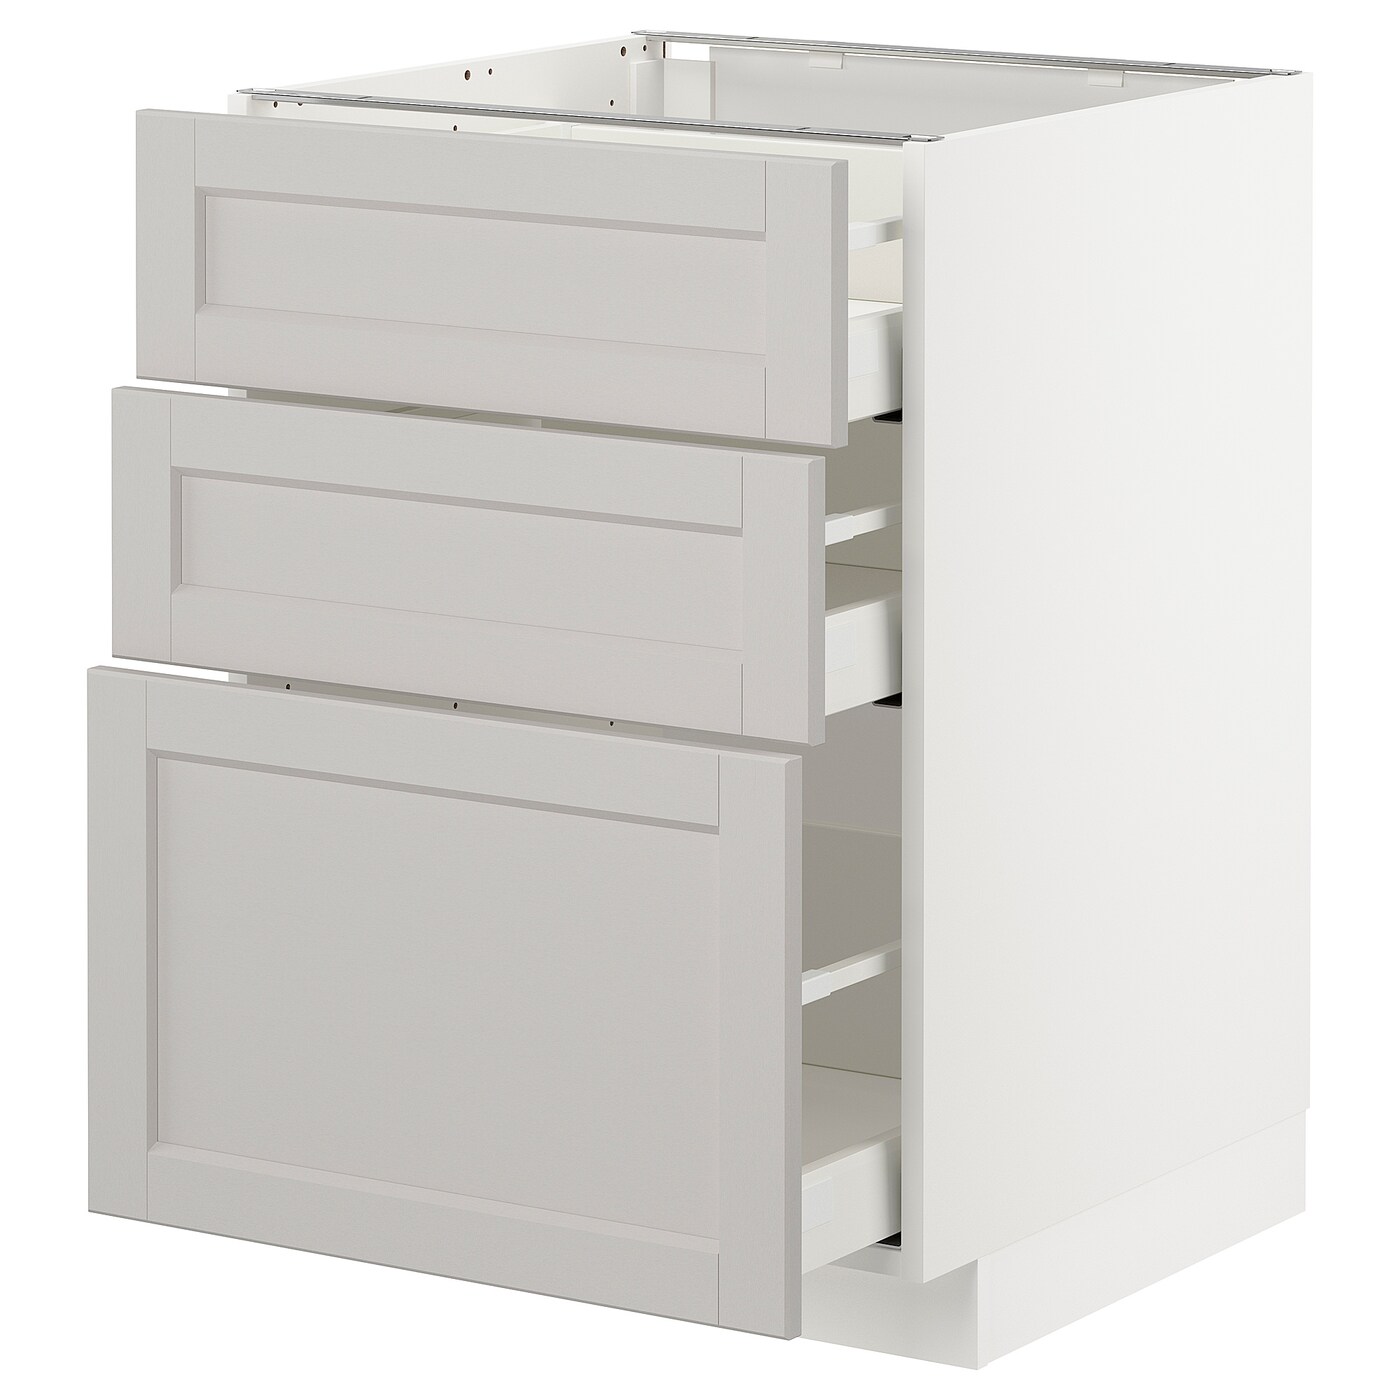 Напольный кухонный шкаф  - IKEA METOD MAXIMERA, 88x62x60см, белый/светло-серый, МЕТОД МАКСИМЕРА ИКЕА